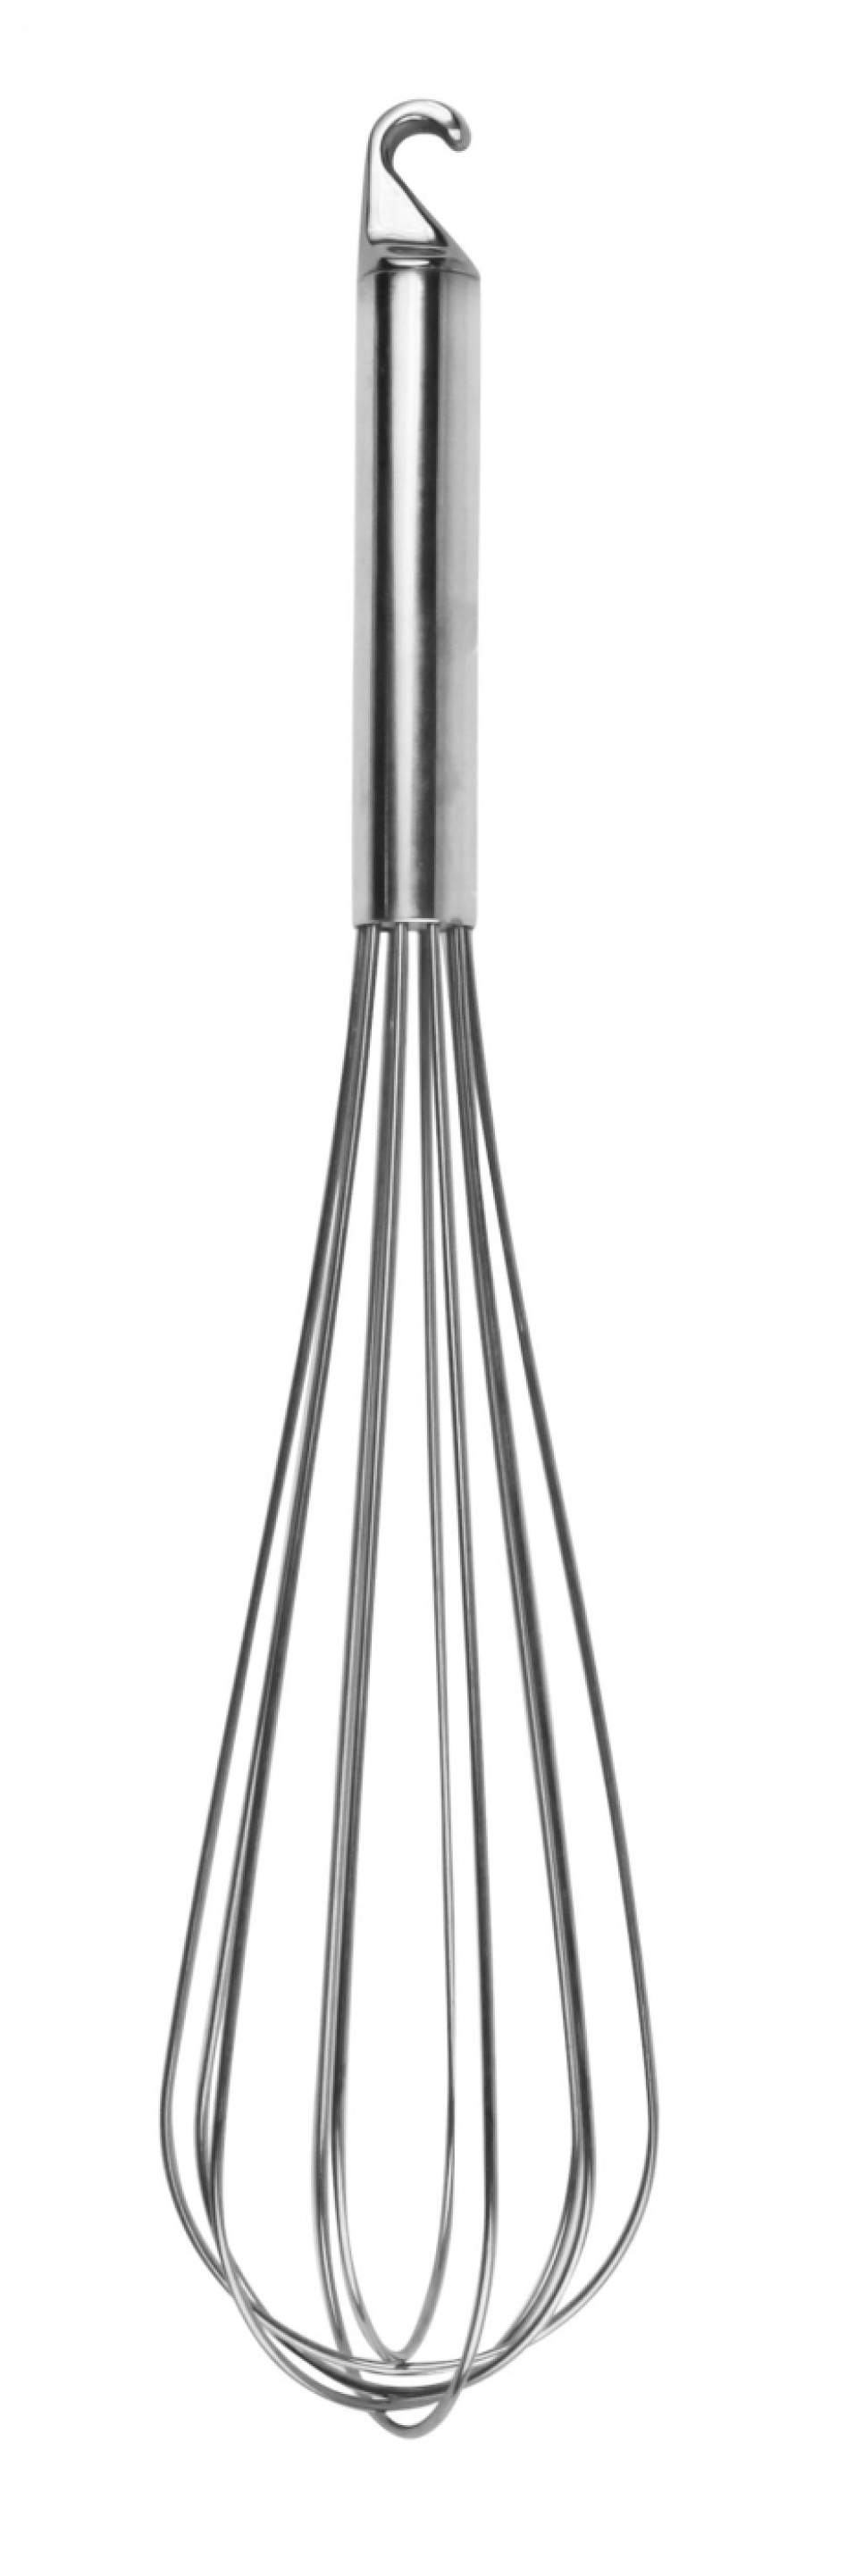 Trzepaczka, 27 cm - Exxent w grupie Gotowanie / Przybory kuchenne / Trzepaczki w The Kitchen Lab (1071-10138)